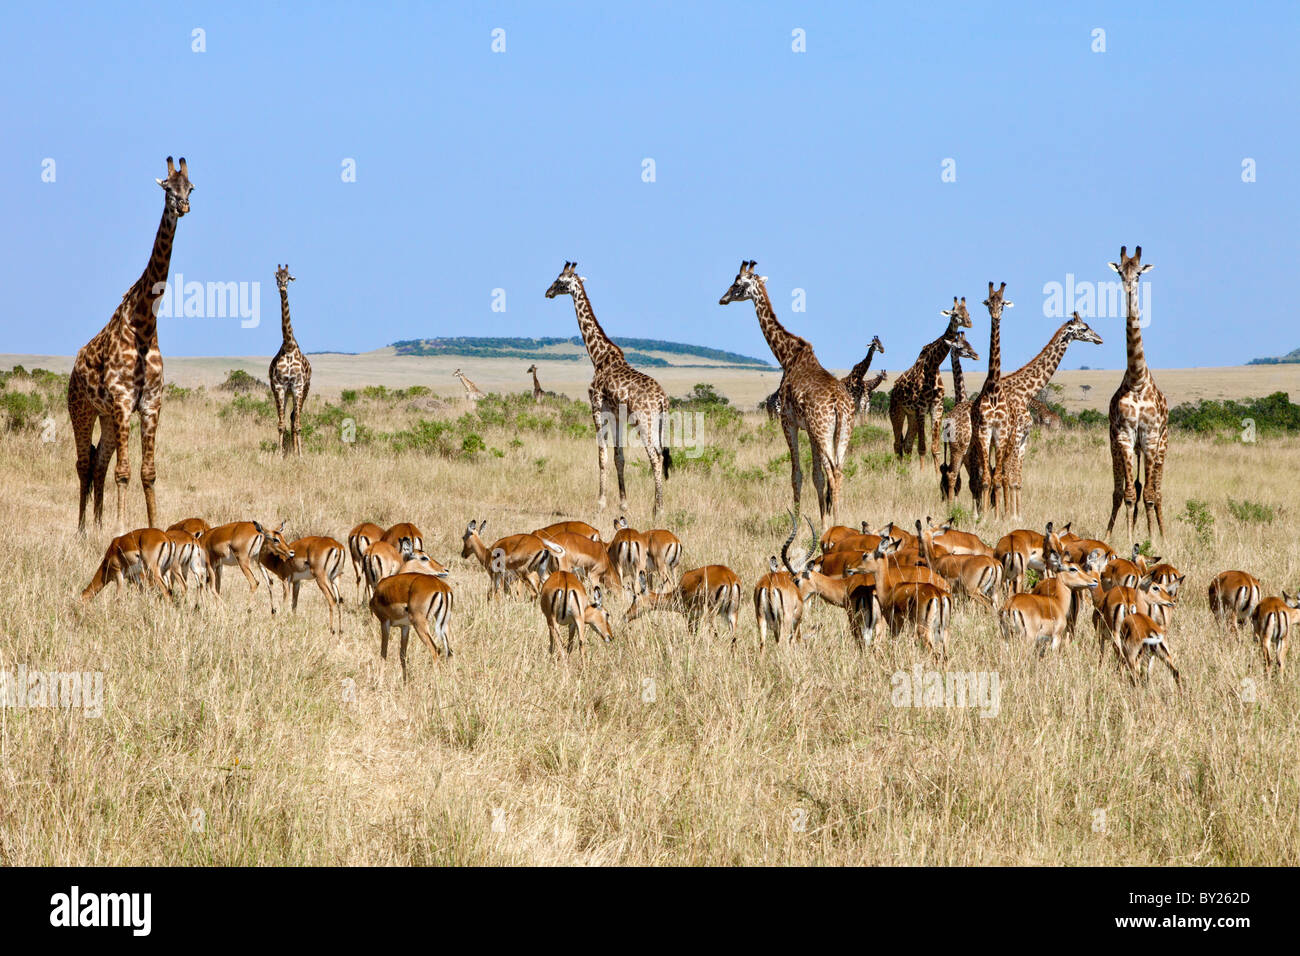 Una manada de impalas pastar cerca de jirafas masai en las llanuras de la Reserva Nacional de Masai Mara. Foto de stock